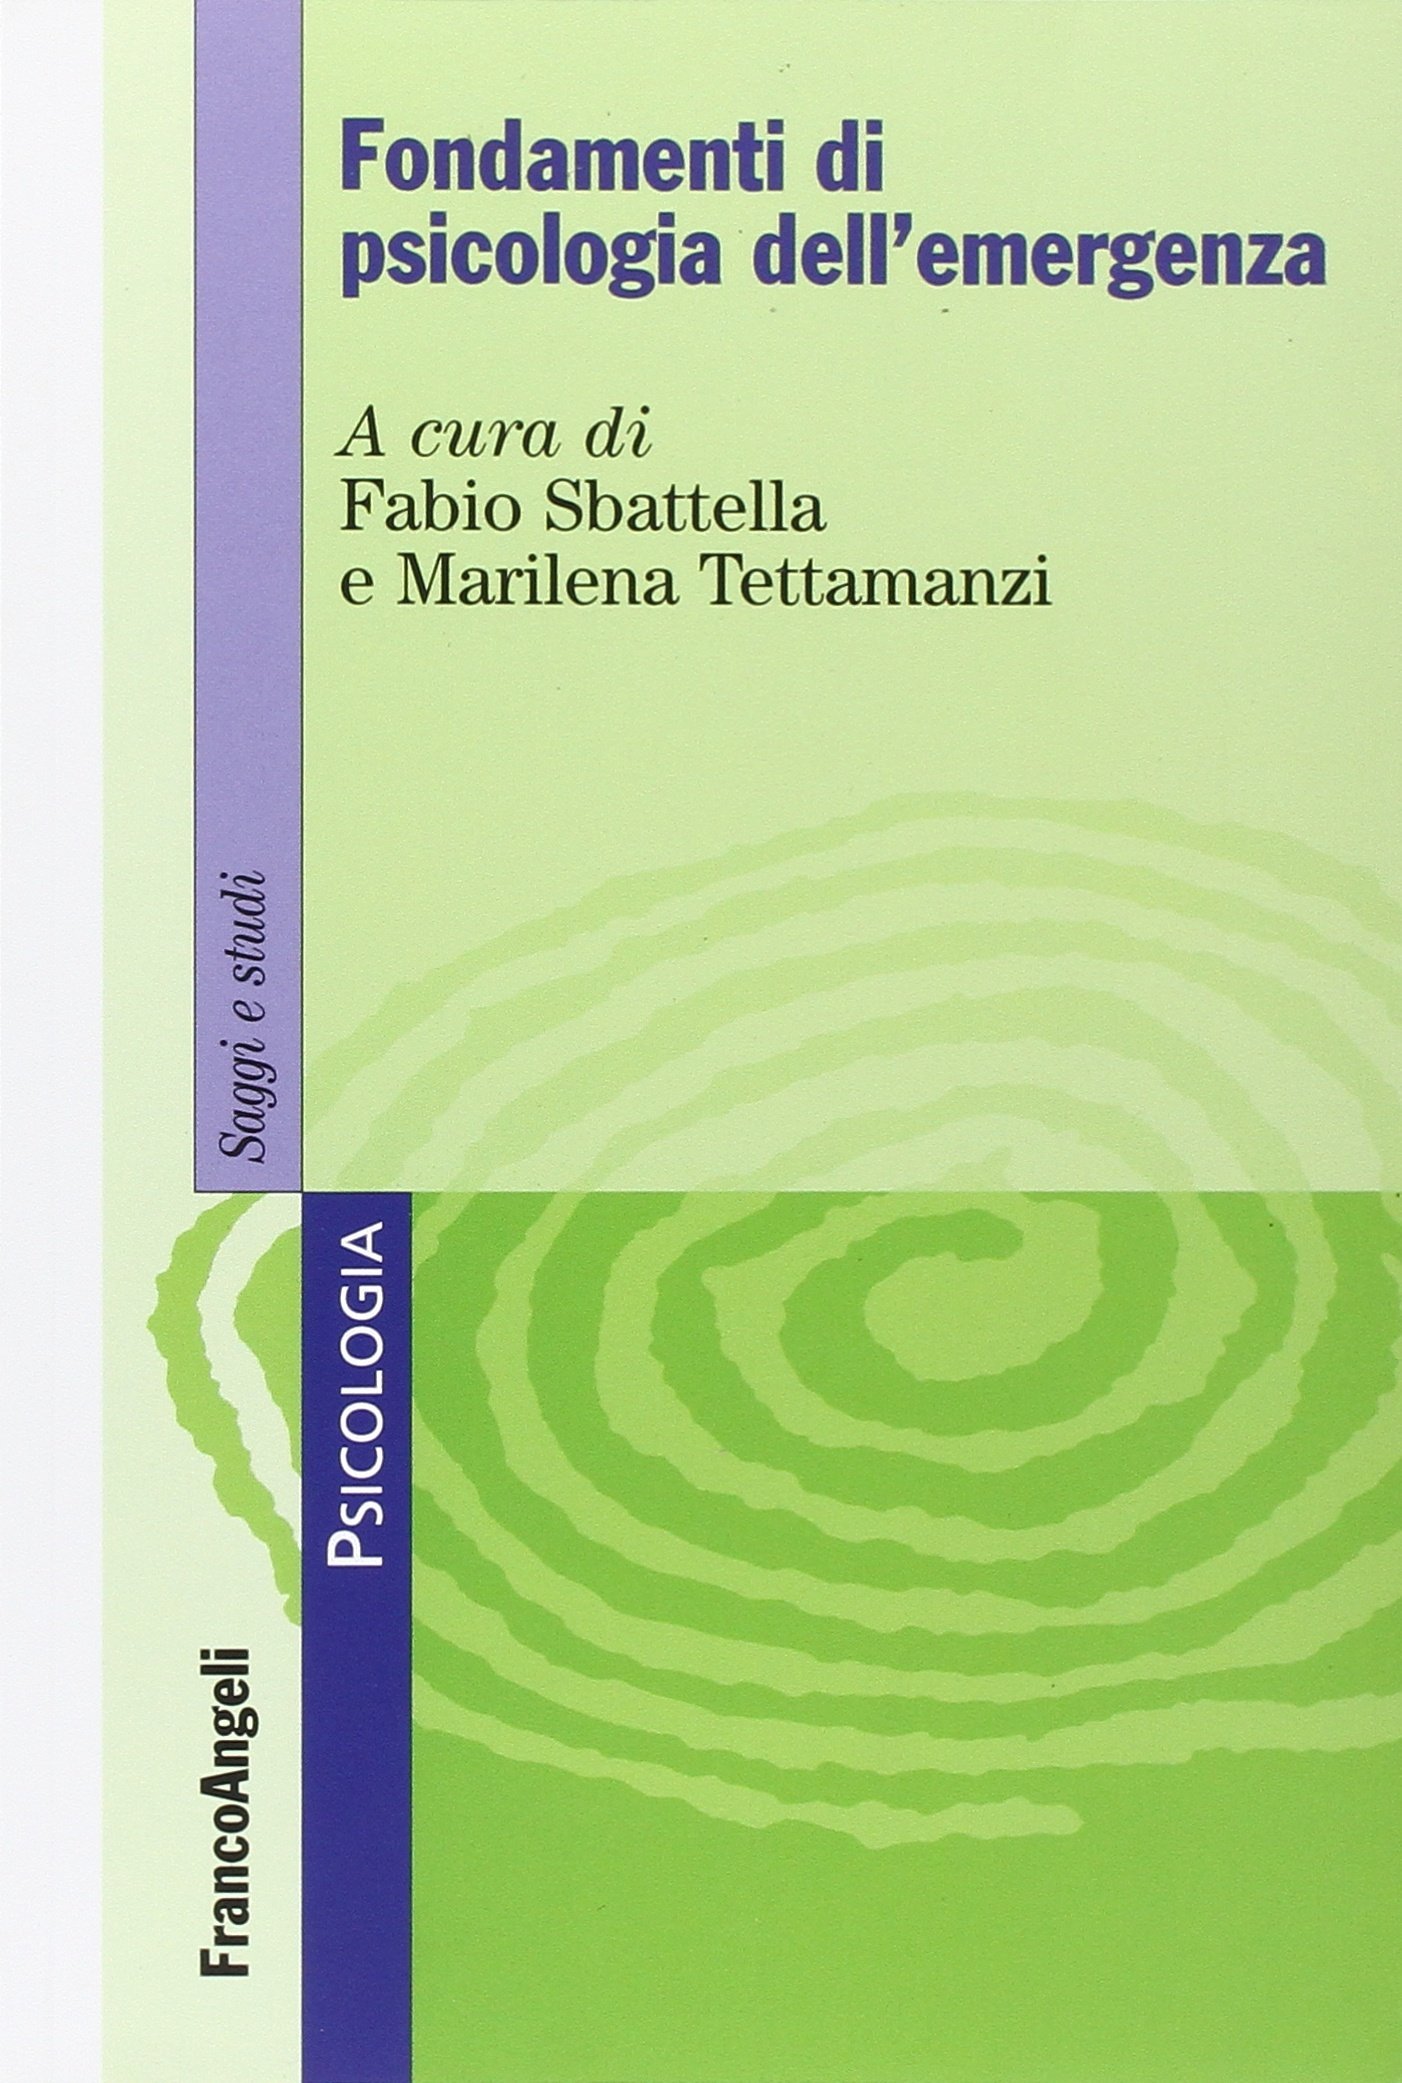 Sbattella F. , Tettamanzi M. (2013). Fondamenti di psicologia dell’emergenza. Edizioni Franco Angeli